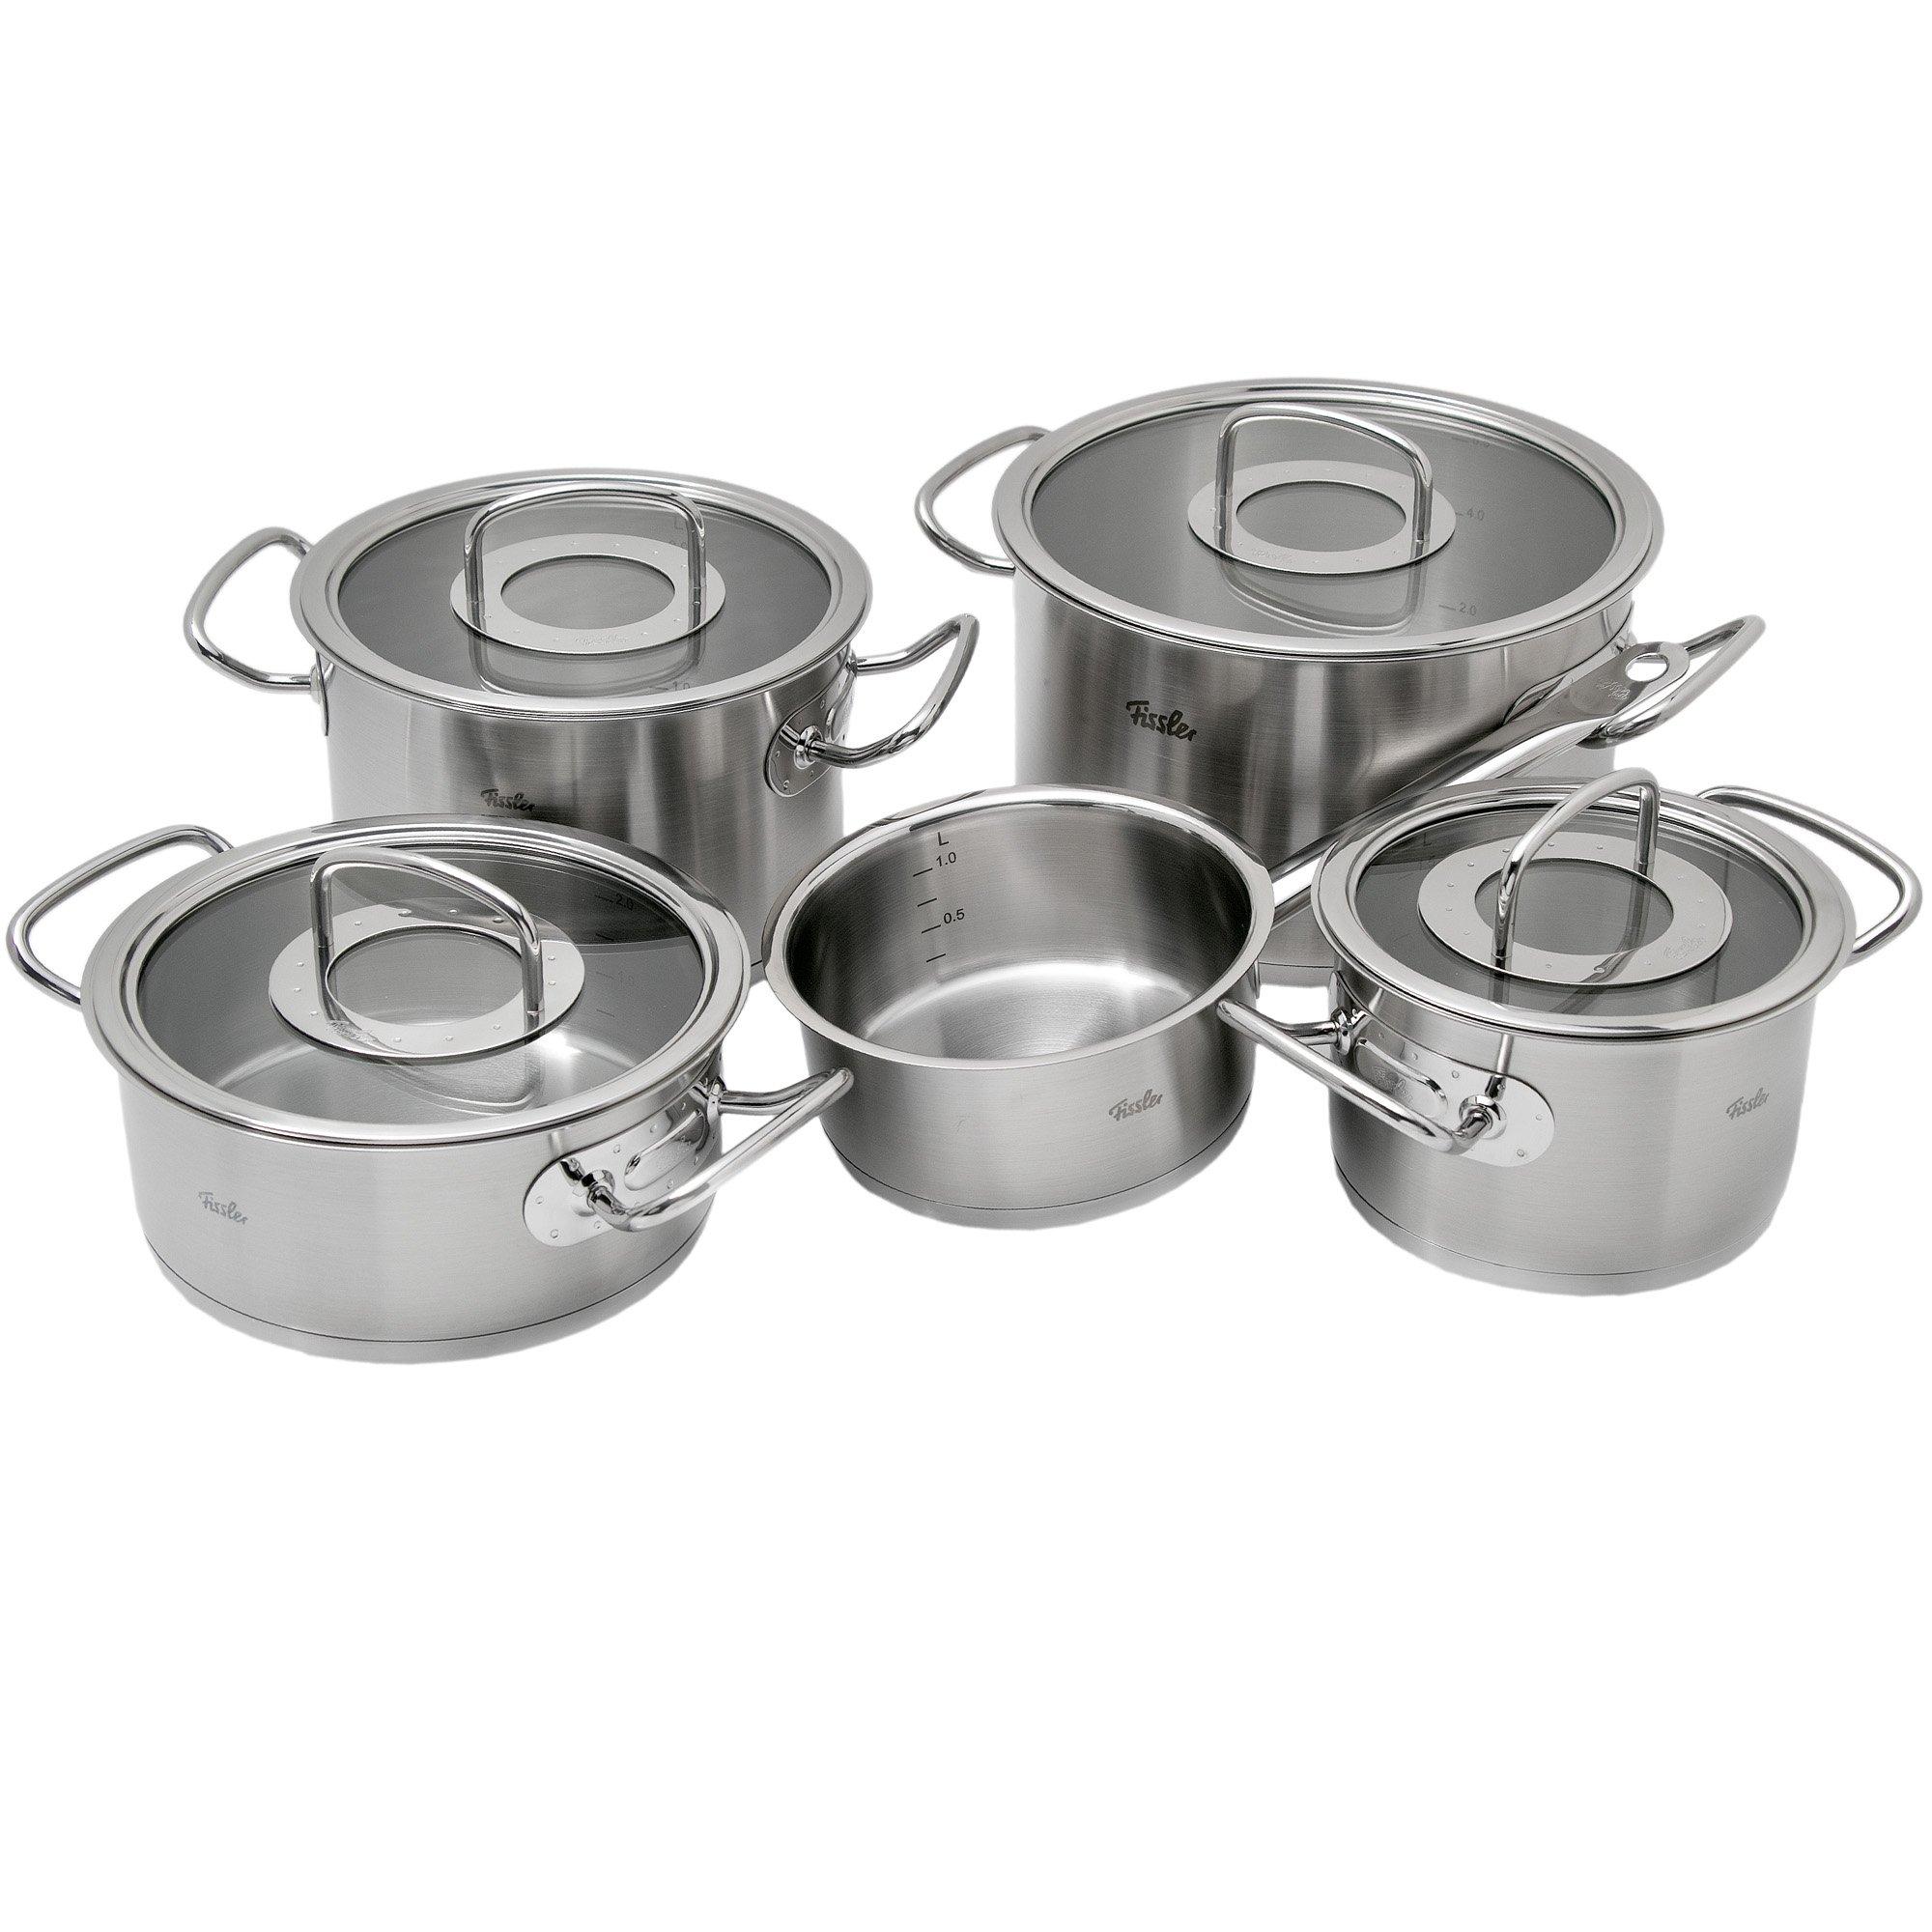 Cooking pots | Buy cooking pots at Knivesandtools